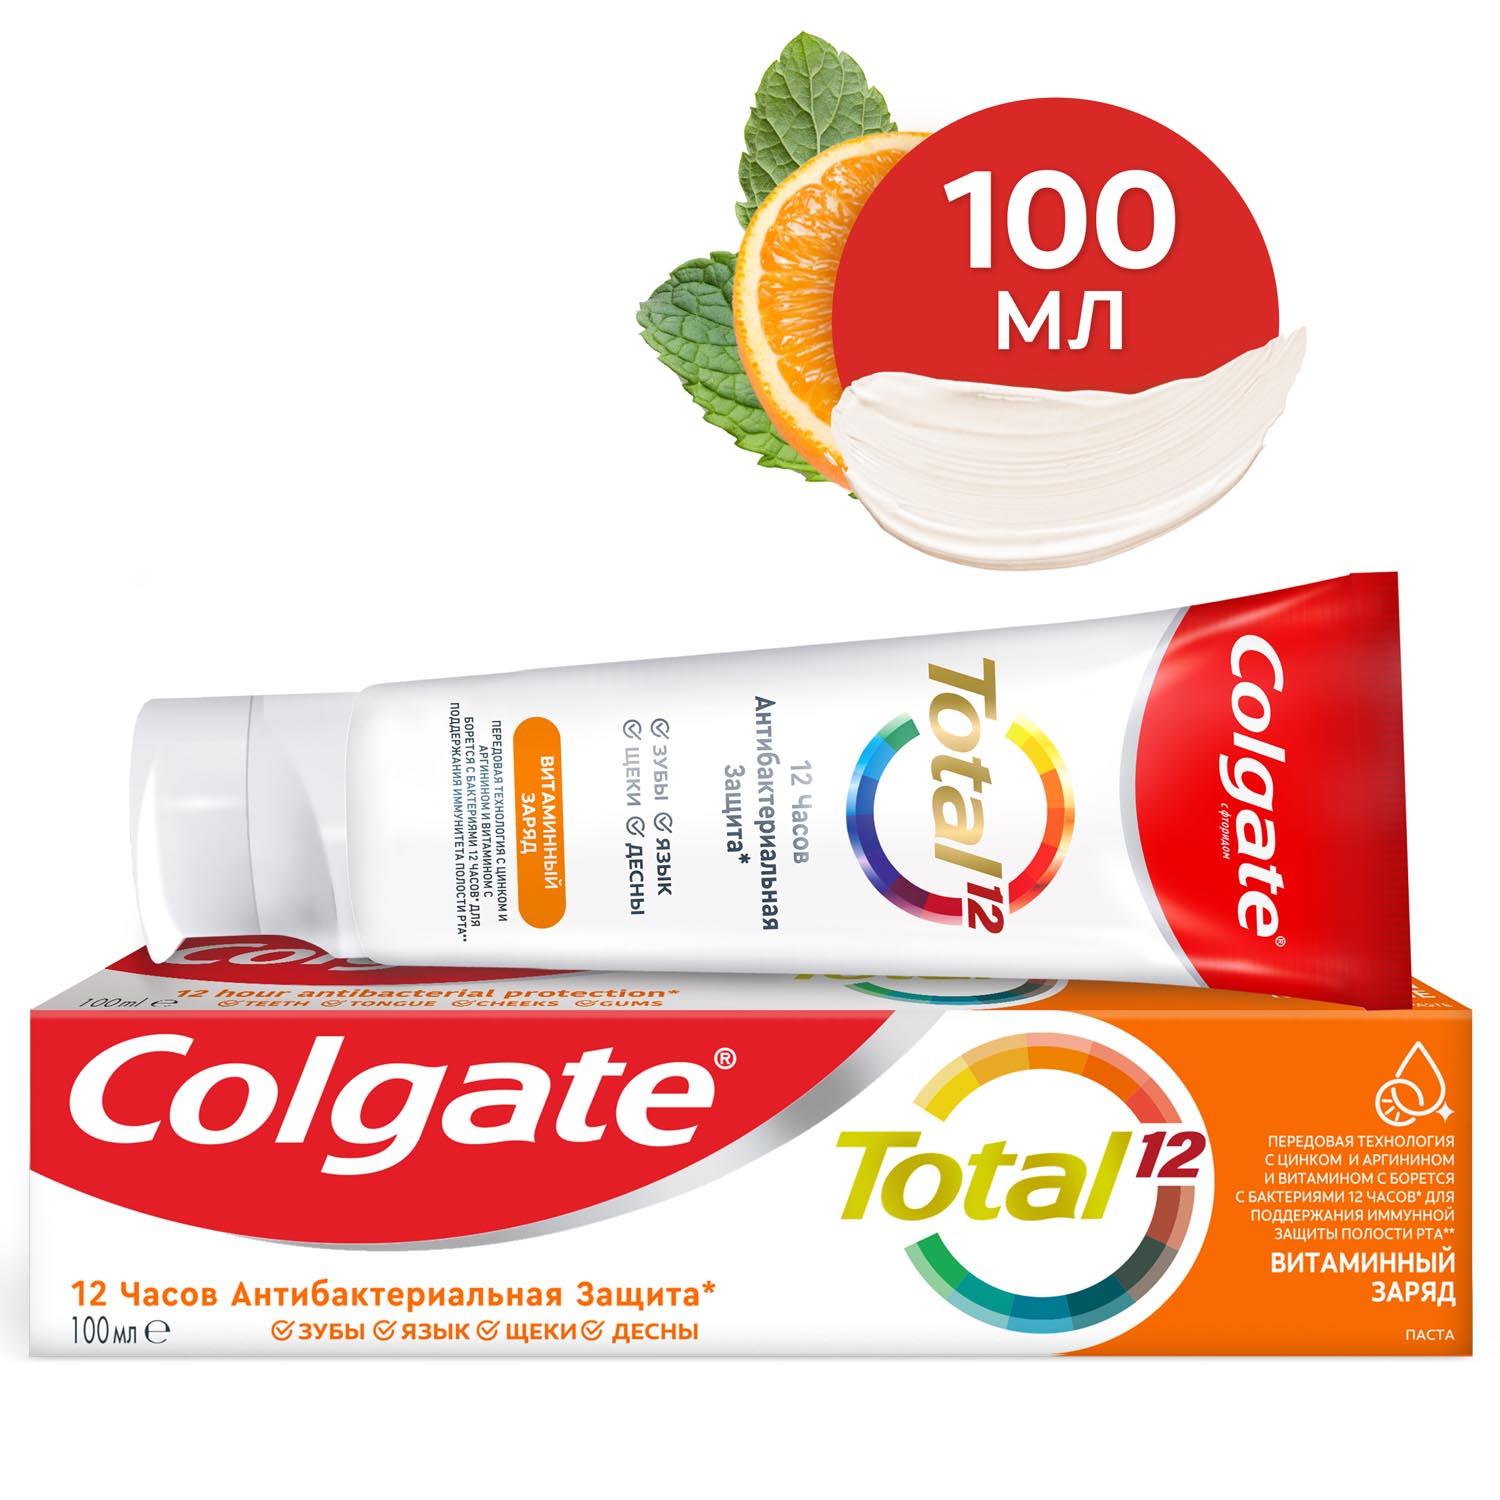 Зубная паста Colgate Total 12 Витаминный заряд с цинком и аргинином для комплексной антибактериальной защиты всей полости рта в течение 12 часов, 100 мл зубная щетка colgate 360 суперчистота всей полости рта